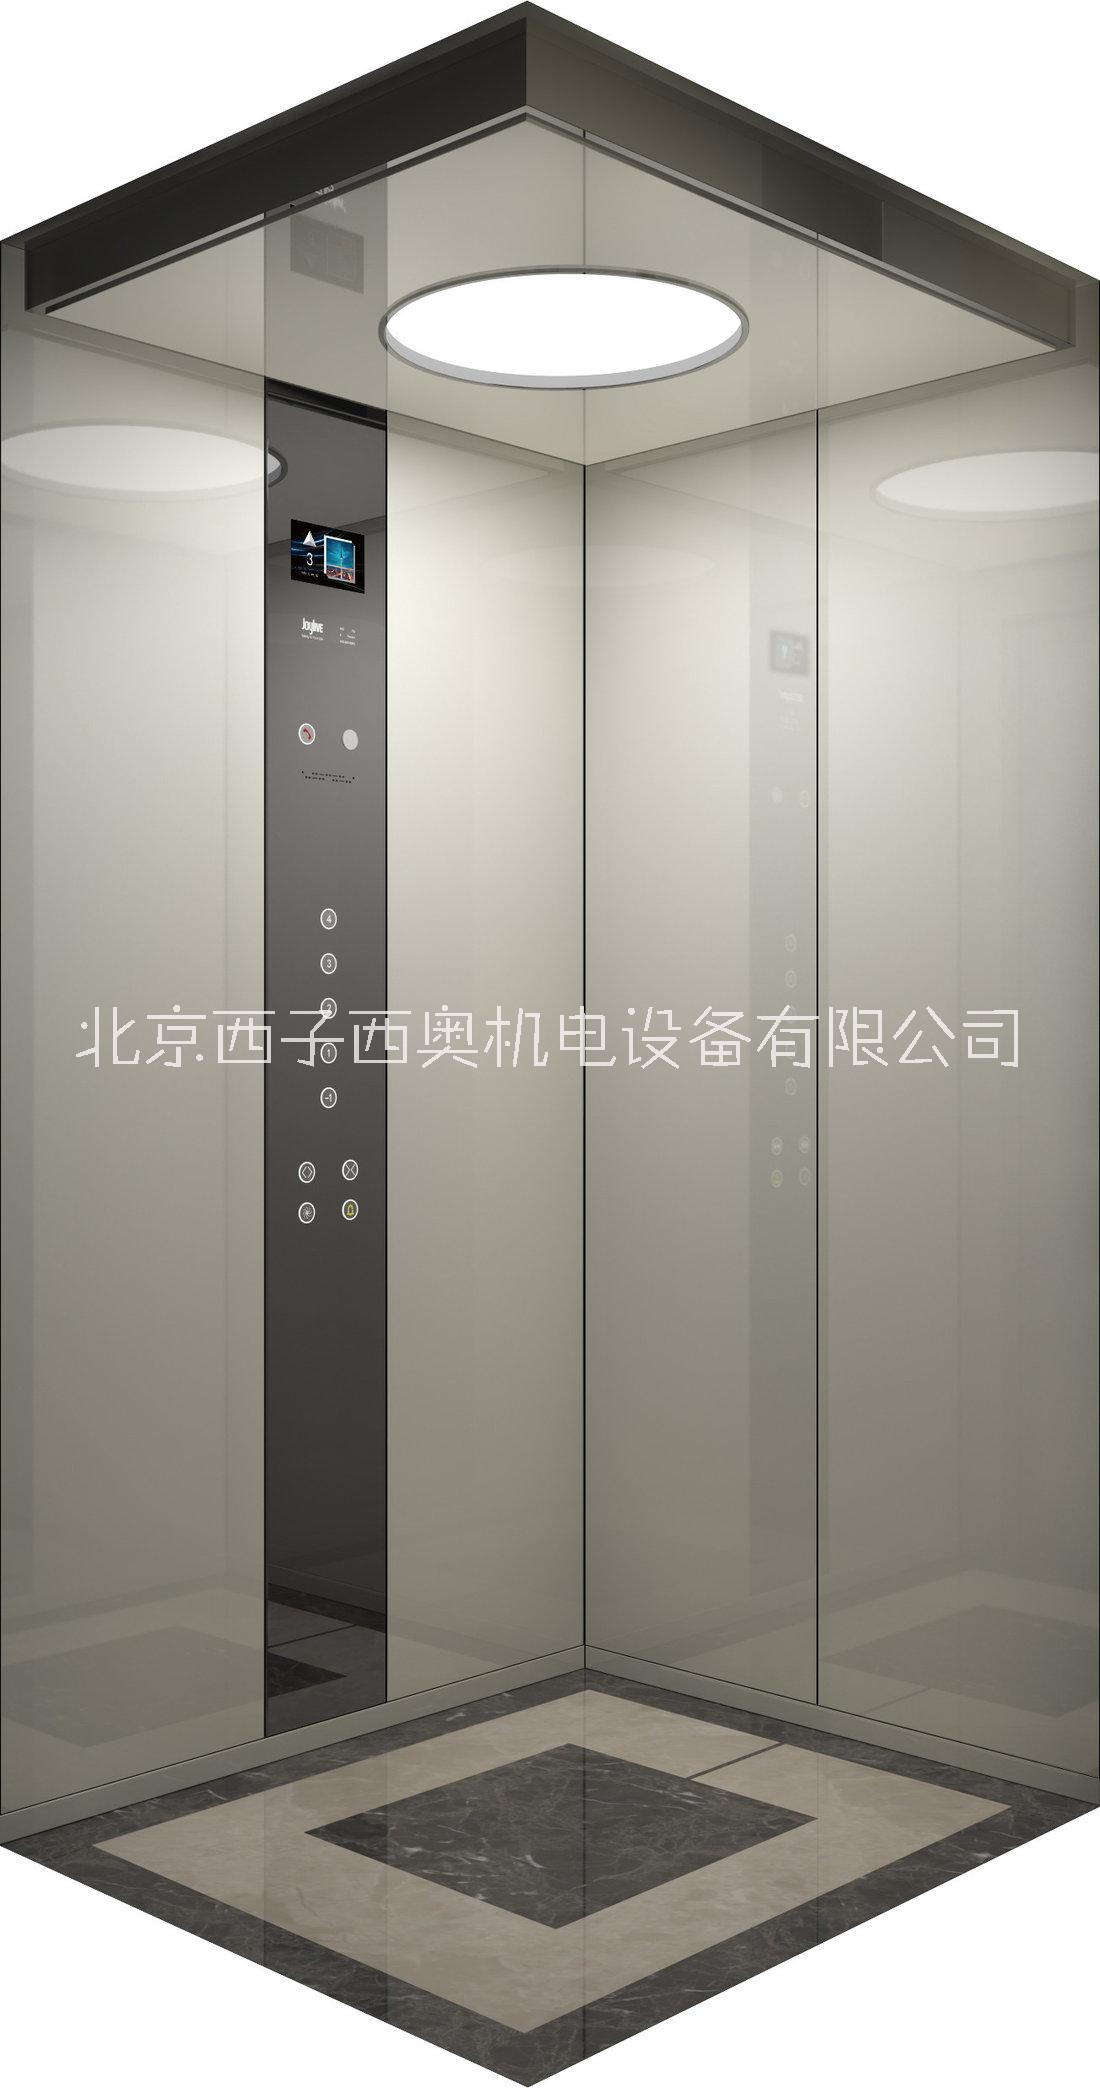 天津电梯生产厂家电动扶梯 高层电梯天津安装电梯的